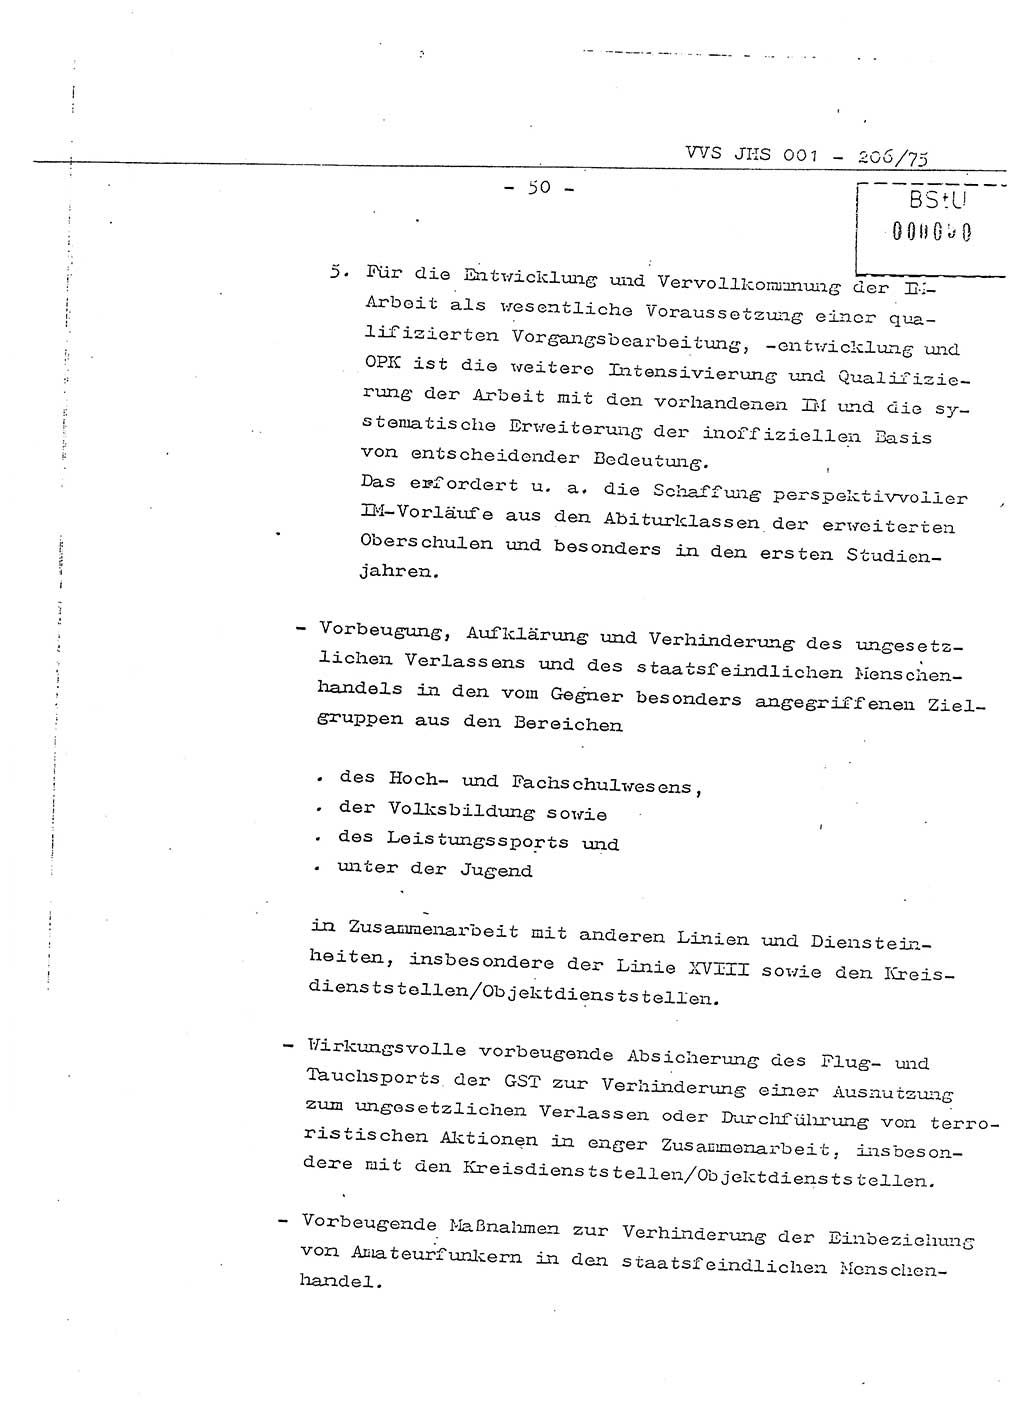 Dissertation Generalmajor Manfred Hummitzsch (Leiter der BV Leipzig), Generalmajor Heinz Fiedler (HA Ⅵ), Oberst Rolf Fister (HA Ⅸ), Ministerium für Staatssicherheit (MfS) [Deutsche Demokratische Republik (DDR)], Juristische Hochschule (JHS), Vertrauliche Verschlußsache (VVS) 001-206/75, Potsdam 1975, Seite 50 (Diss. MfS DDR JHS VVS 001-206/75 1975, S. 50)